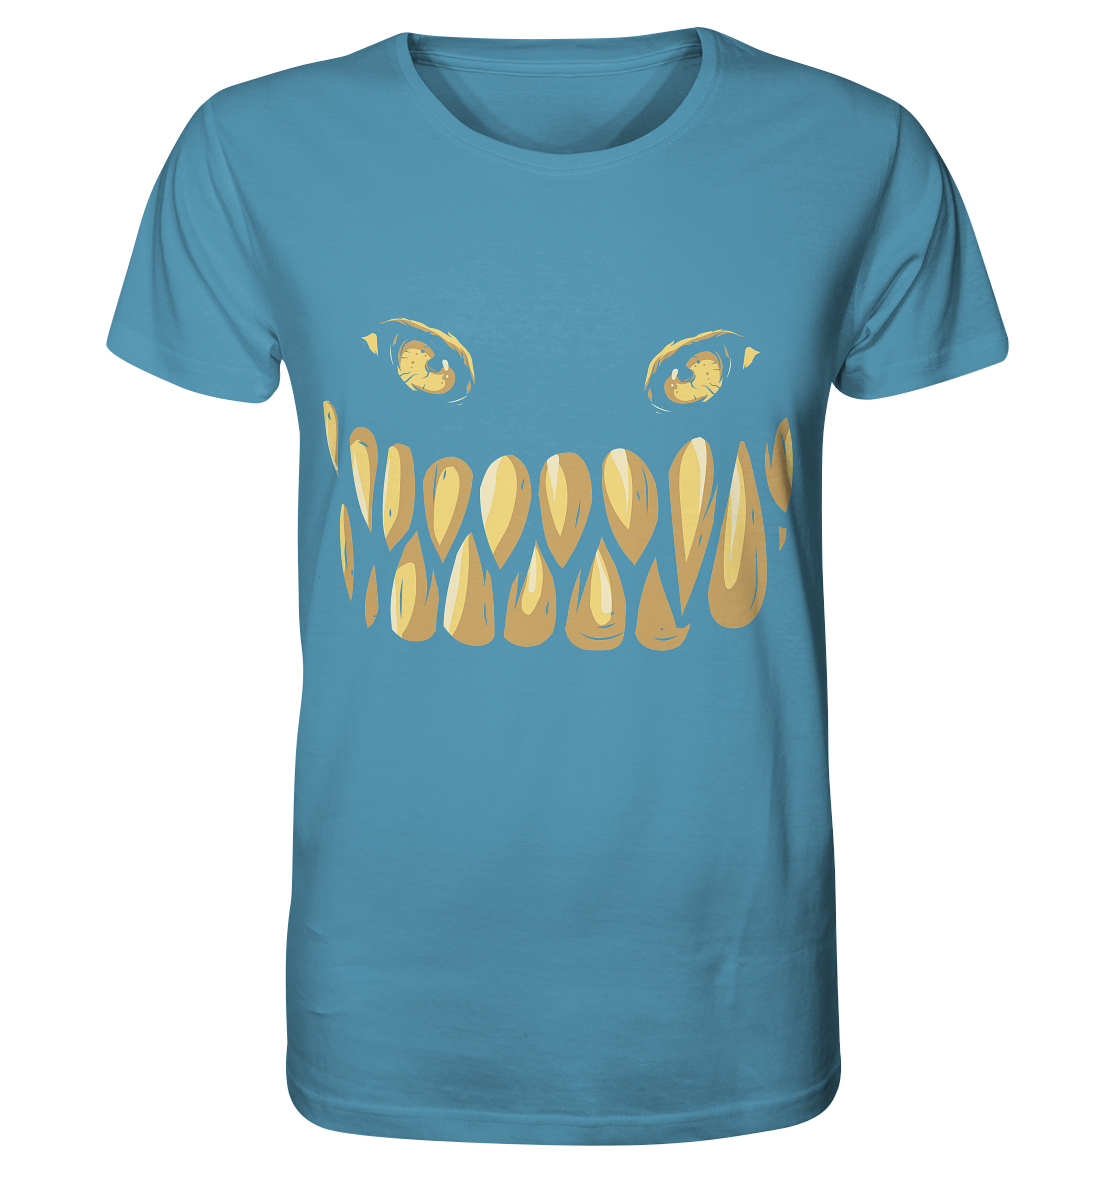 Monster Smile - Organic Shirt